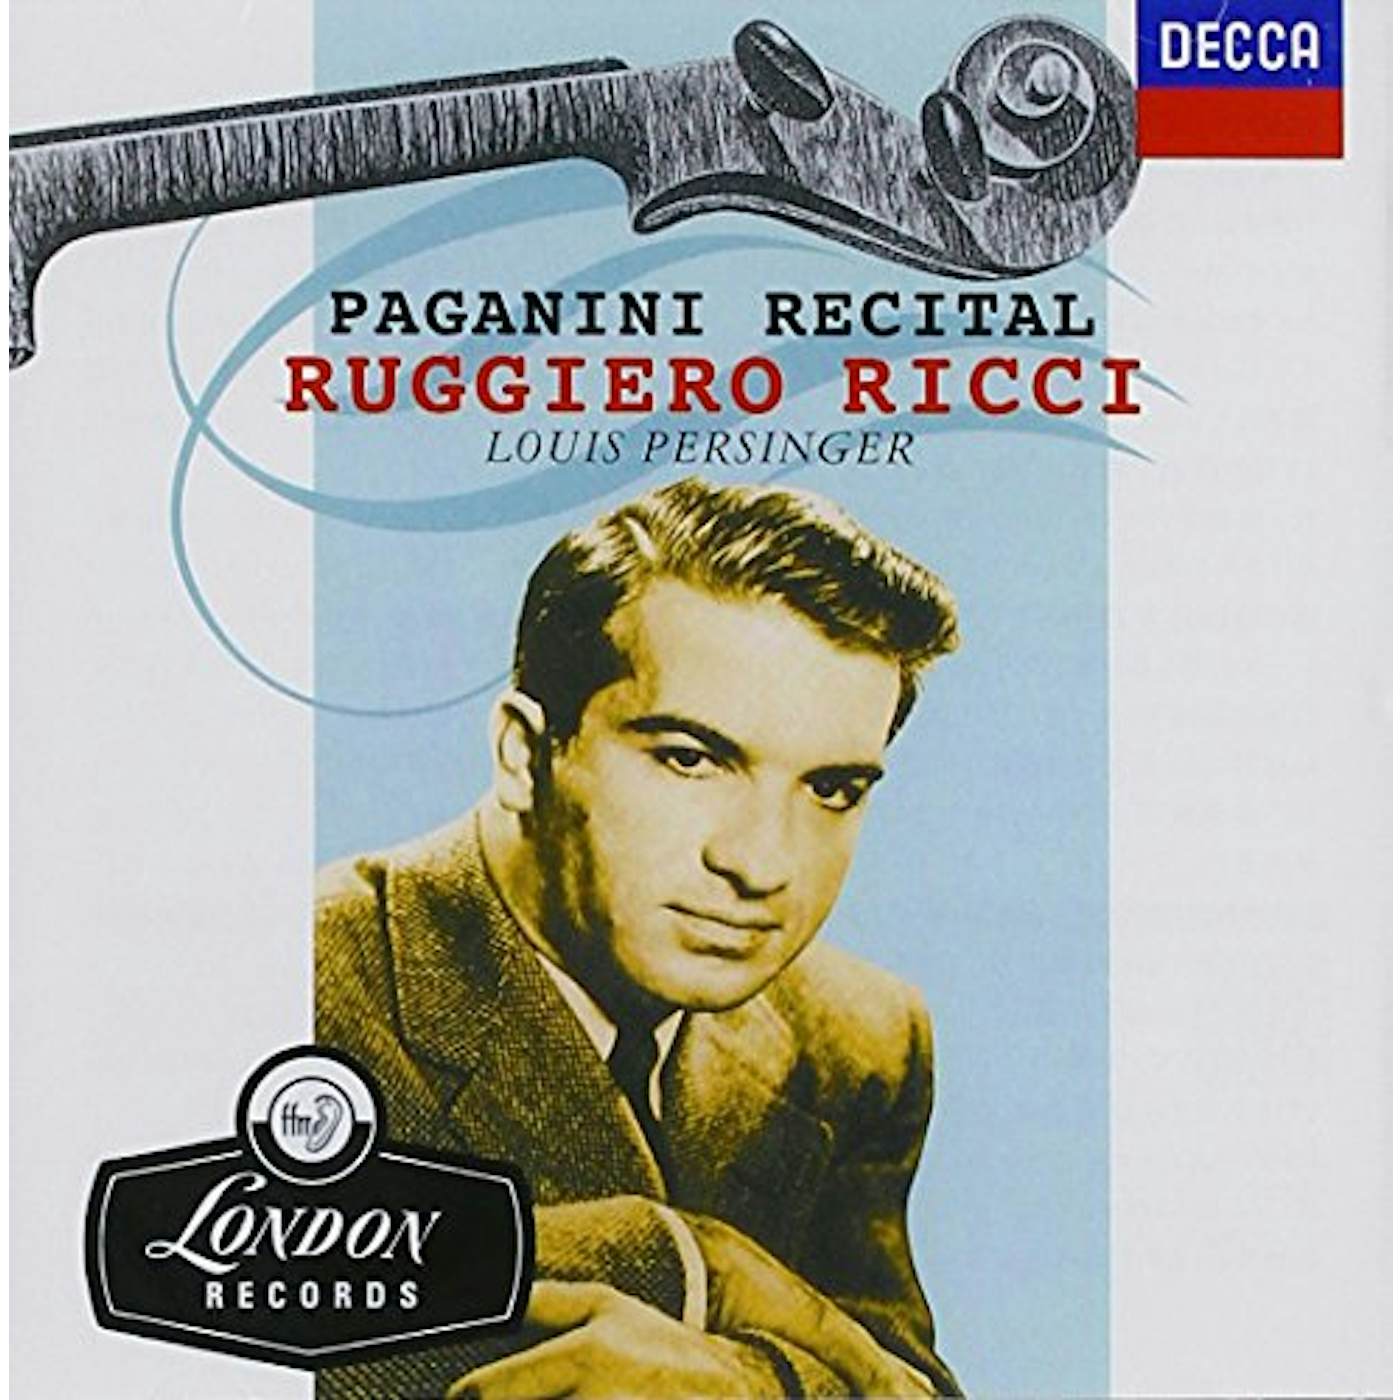 Ruggiero Ricci PAGANINI RECITAL CD